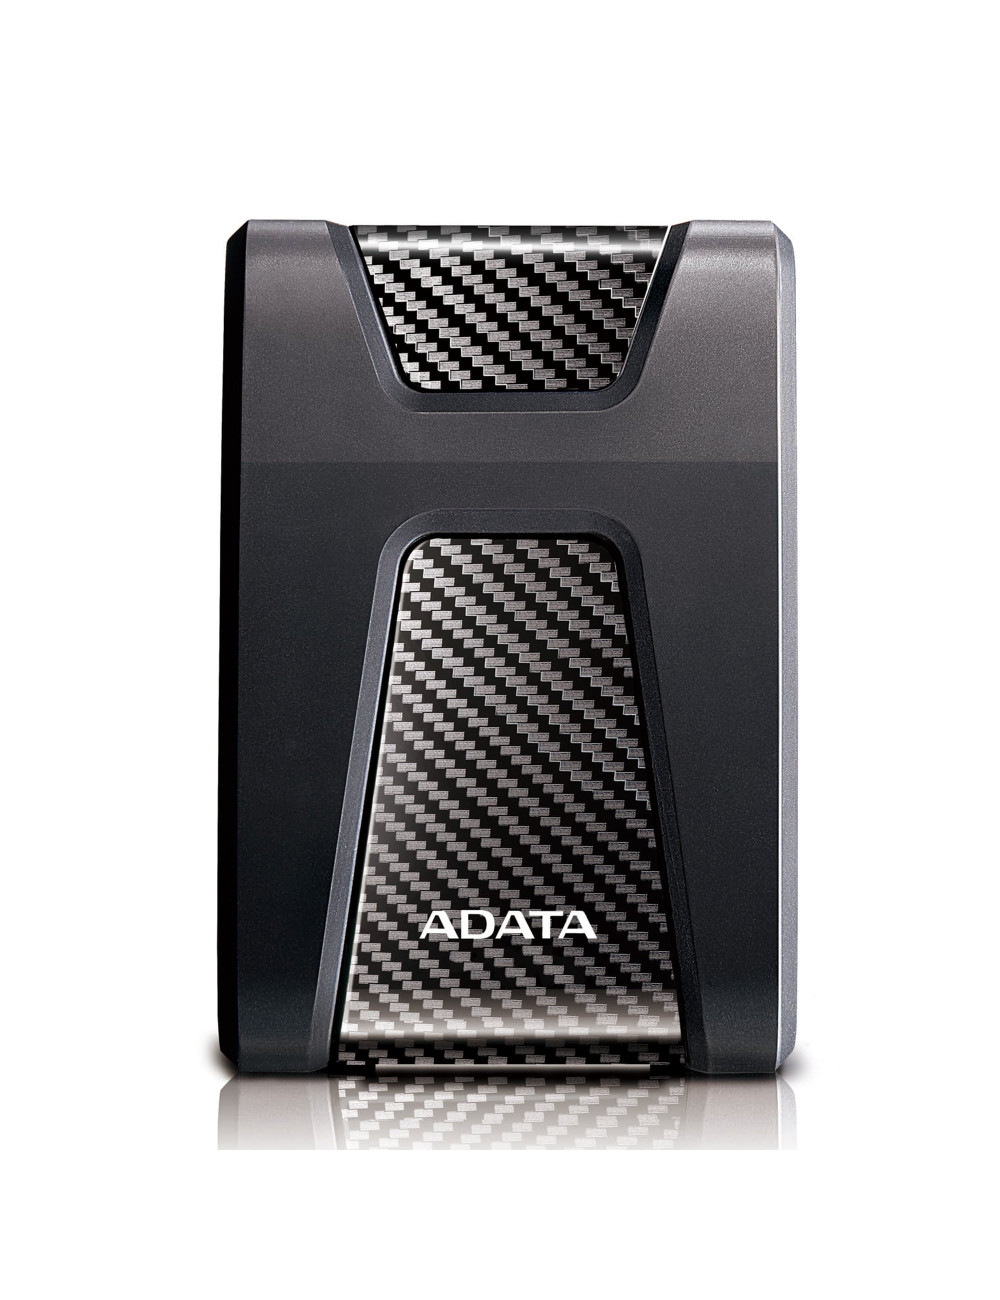 ADATA HD650 2TB USB3.0 Black ext. 2.5in